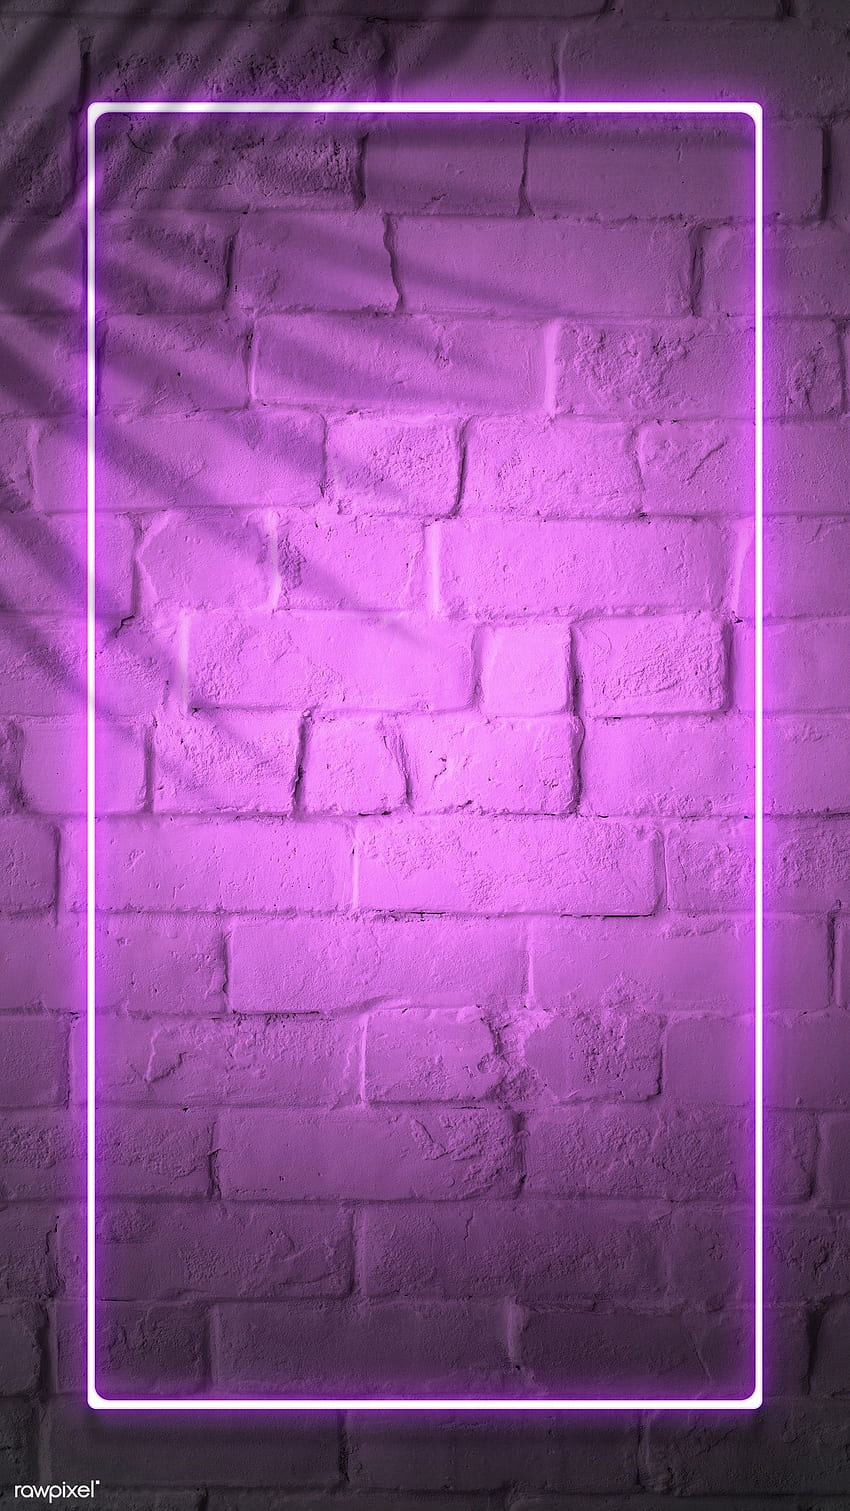 psd premium / layar ponsel lampu neon merah muda tropis oleh Jubjang tentang latar belakang ungu, neon, bingkai ungu, neon dinding bata, dan bingkai neon merah muda 1223358 wallpaper ponsel HD